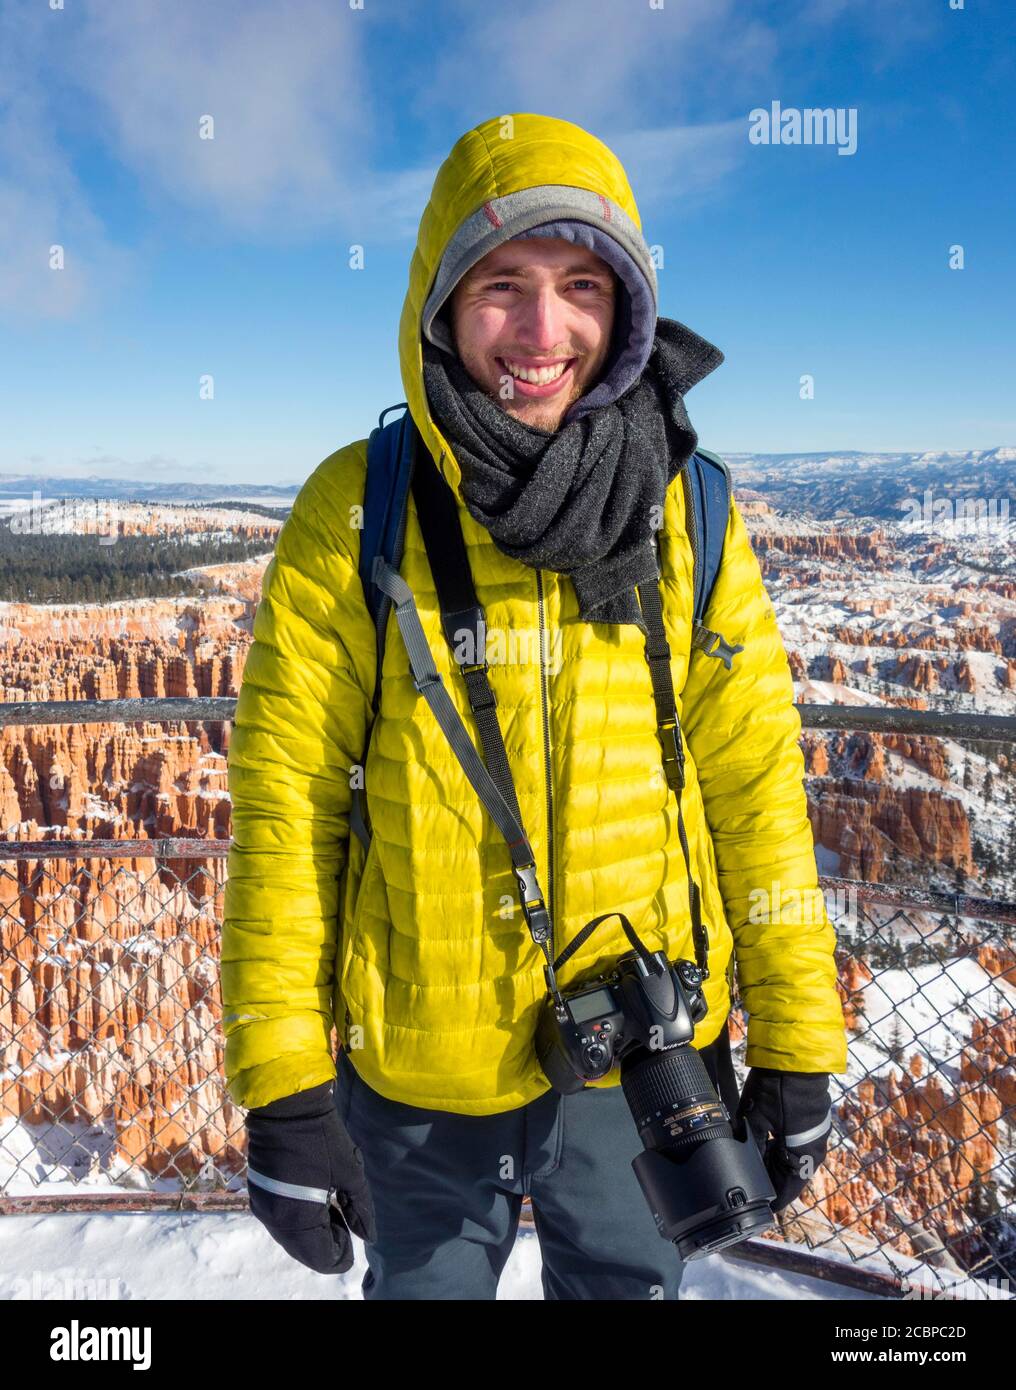 Portrait, jeune homme en vêtements d'hiver avec appareil photo au point de vue, paysage rocheux avec des zoos en hiver, Rim Trail, parc national de Bryce Canyon Banque D'Images